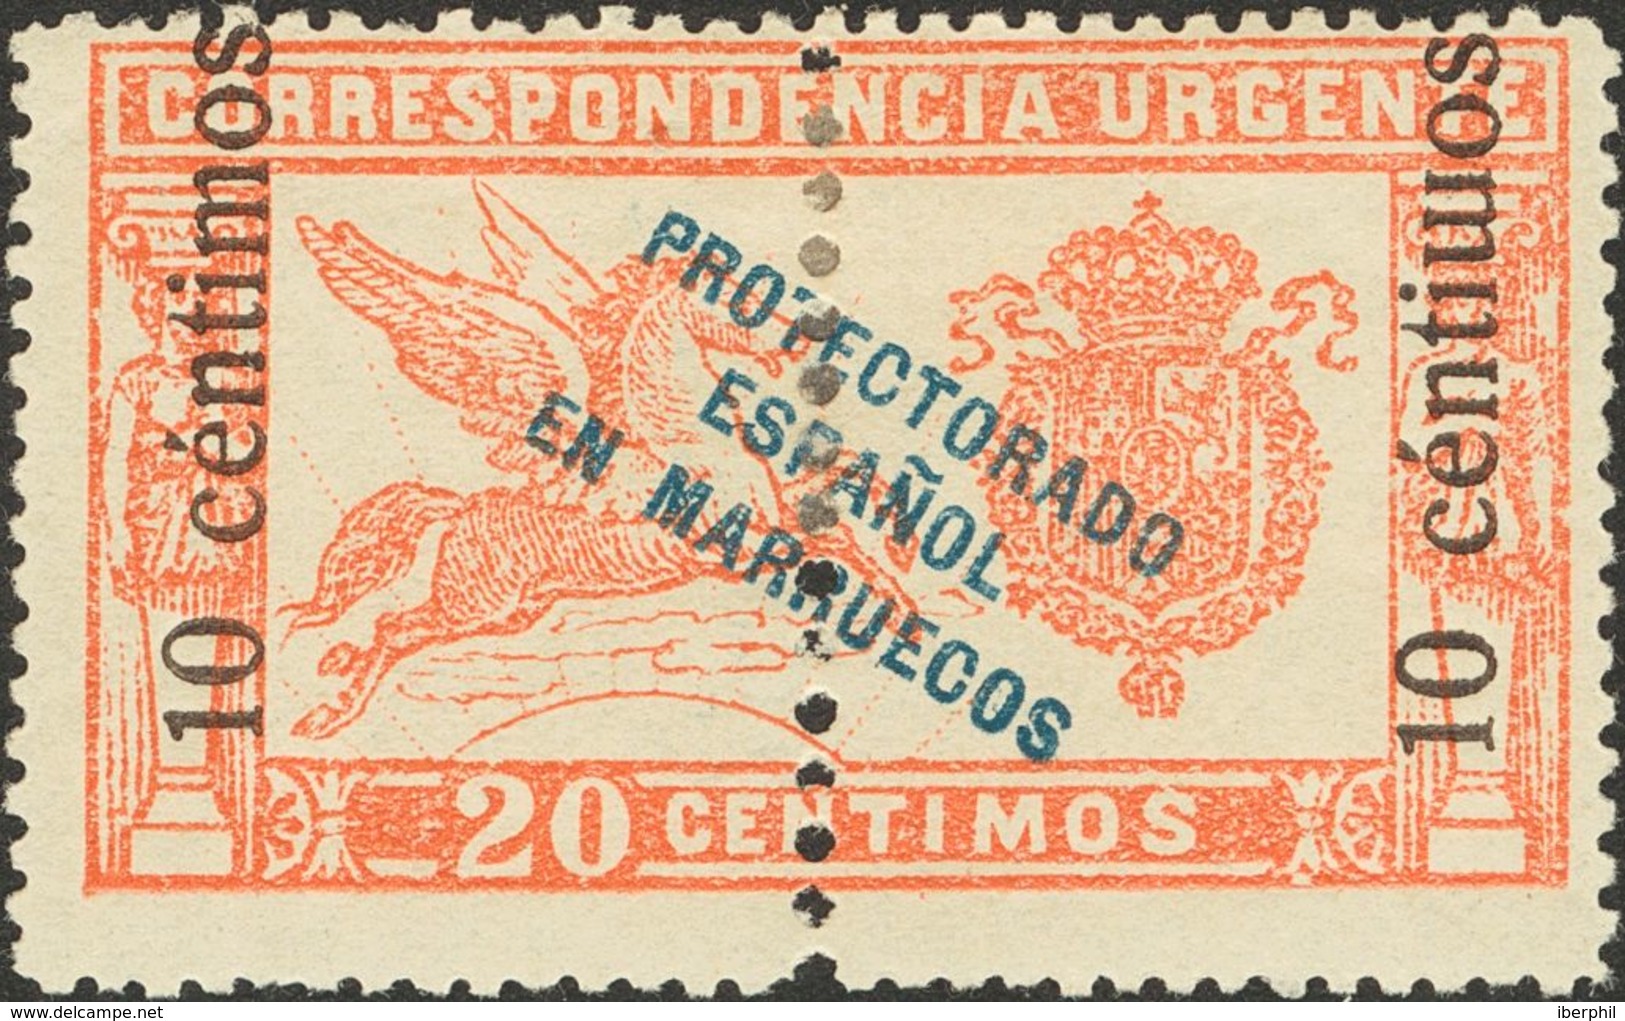 Marruecos. * 66hea 1920. 10 Cts Sobre 20 Cts Rojo. Variedad "M" DE CENTIMOS INVERTIDA. MAGNIFICO. 2013 105. - Spanish Morocco